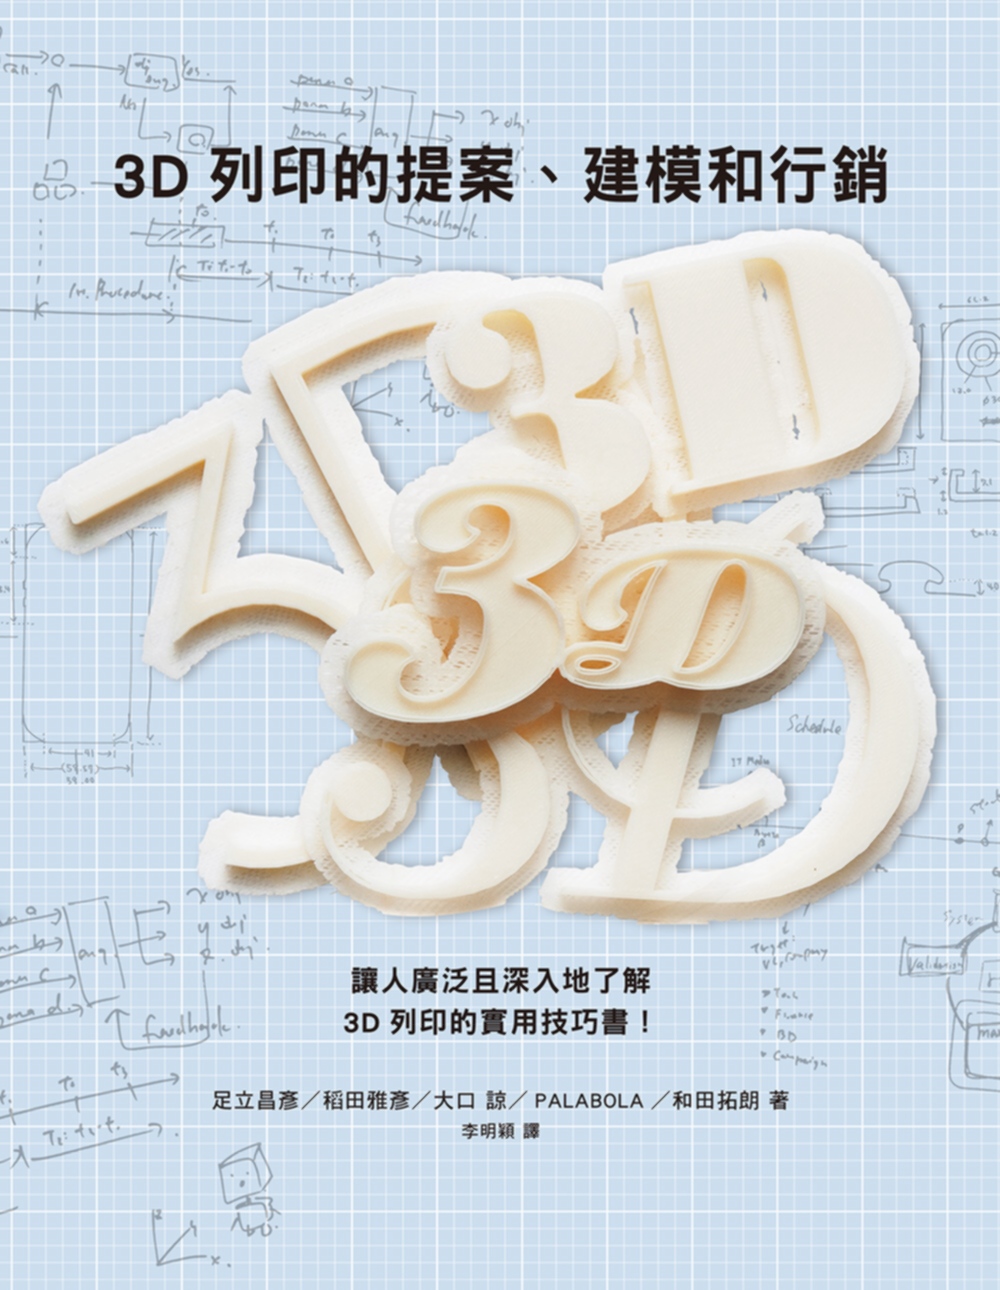 3D列印的提案、建模和行銷：數位創作新革命，提供您實用的3D列印知識與訣竅